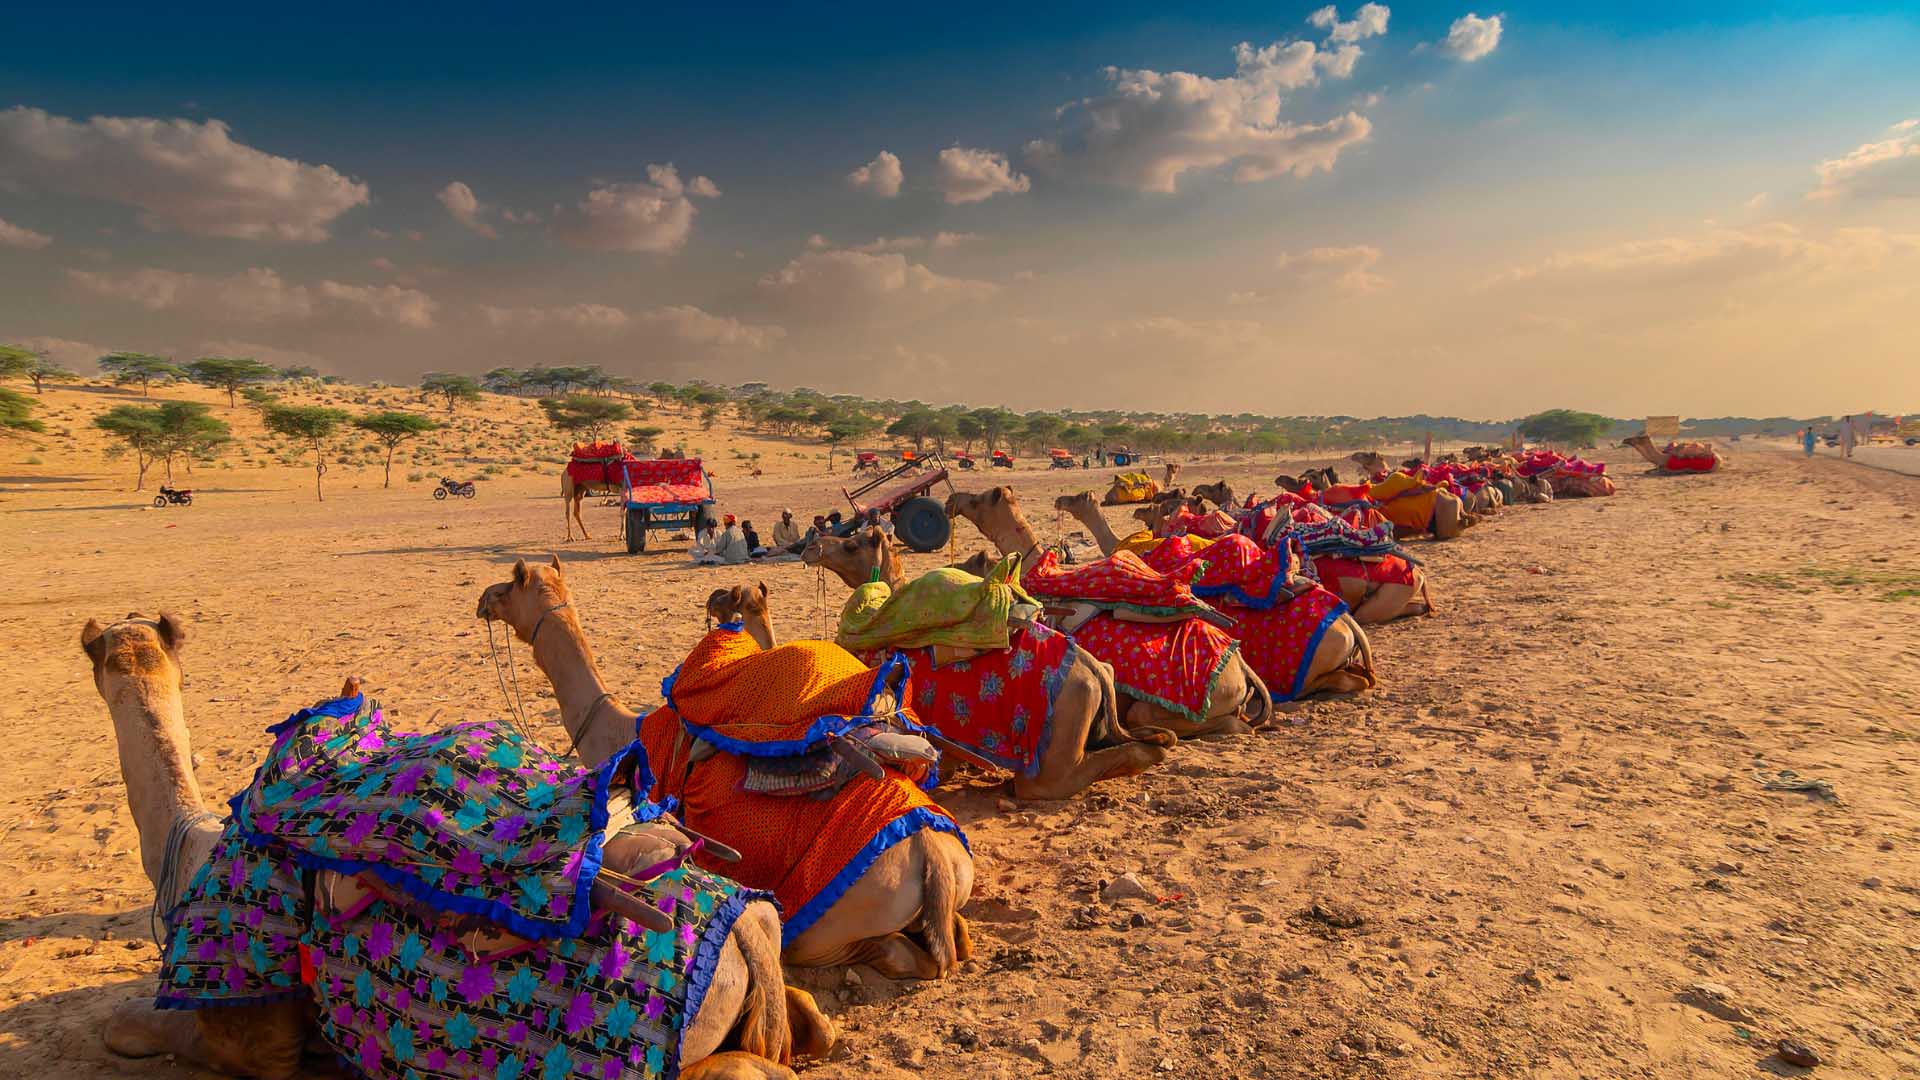 desert safari tourism in india